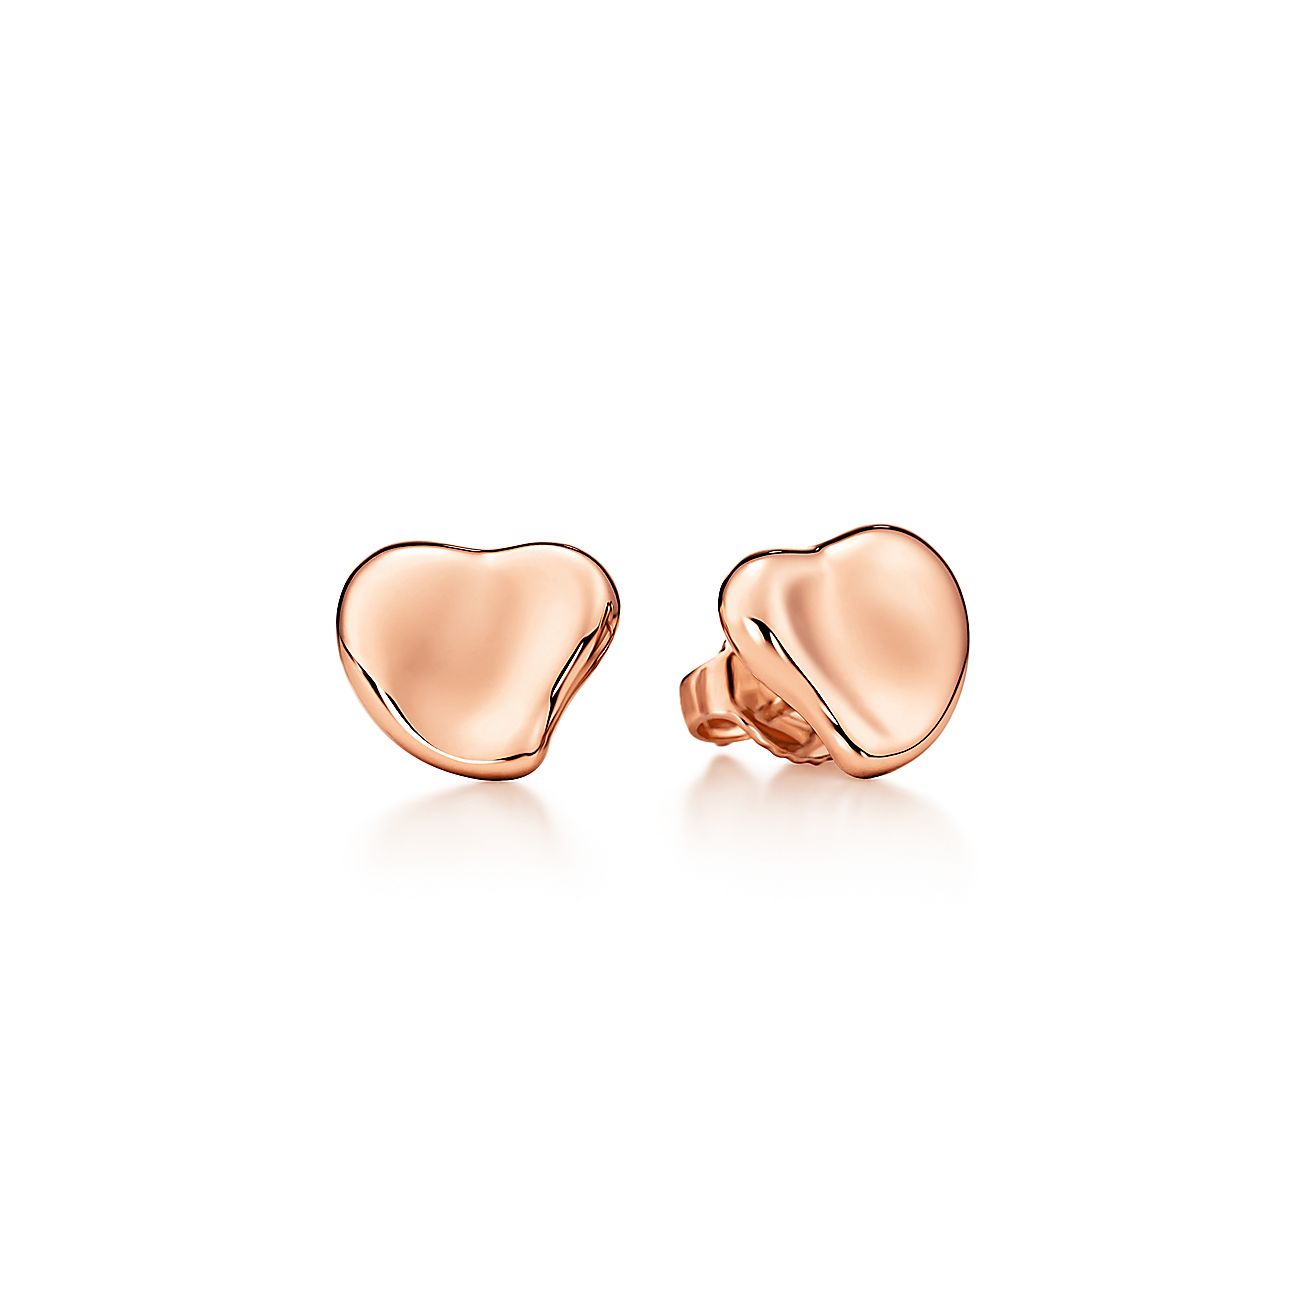 Elsa Peretti® Full Heart earrings in 18k rose gold, 10 mm. | Tiffany & Co.